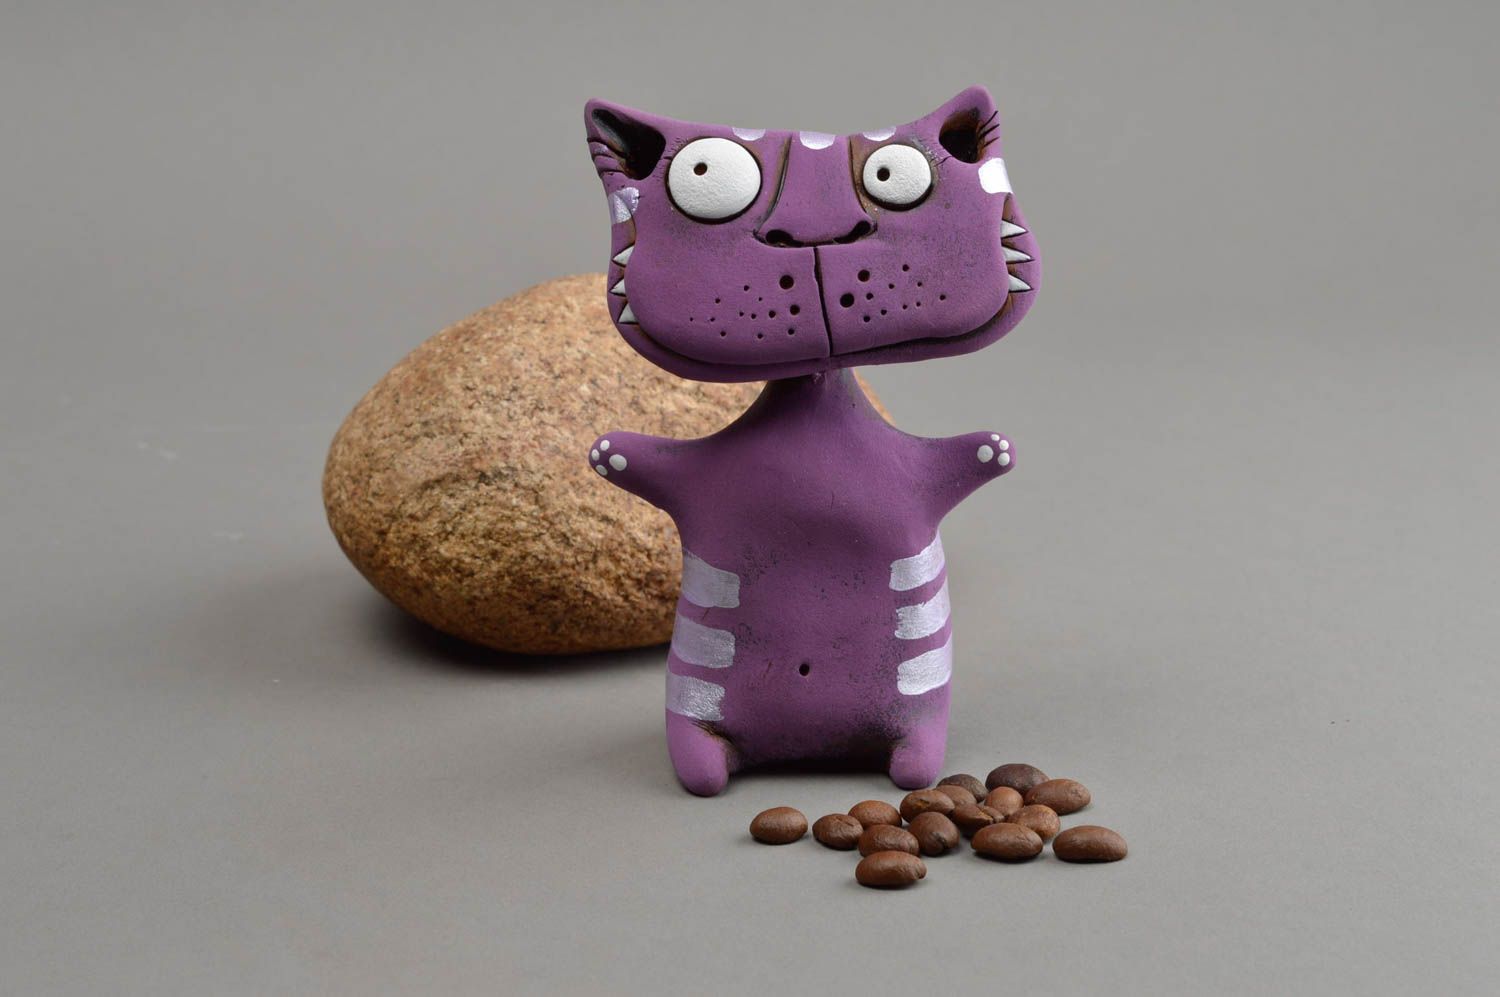 Фиолетовая глиняная статуэтка в виде кота ручной работы расписанная красками фото 1